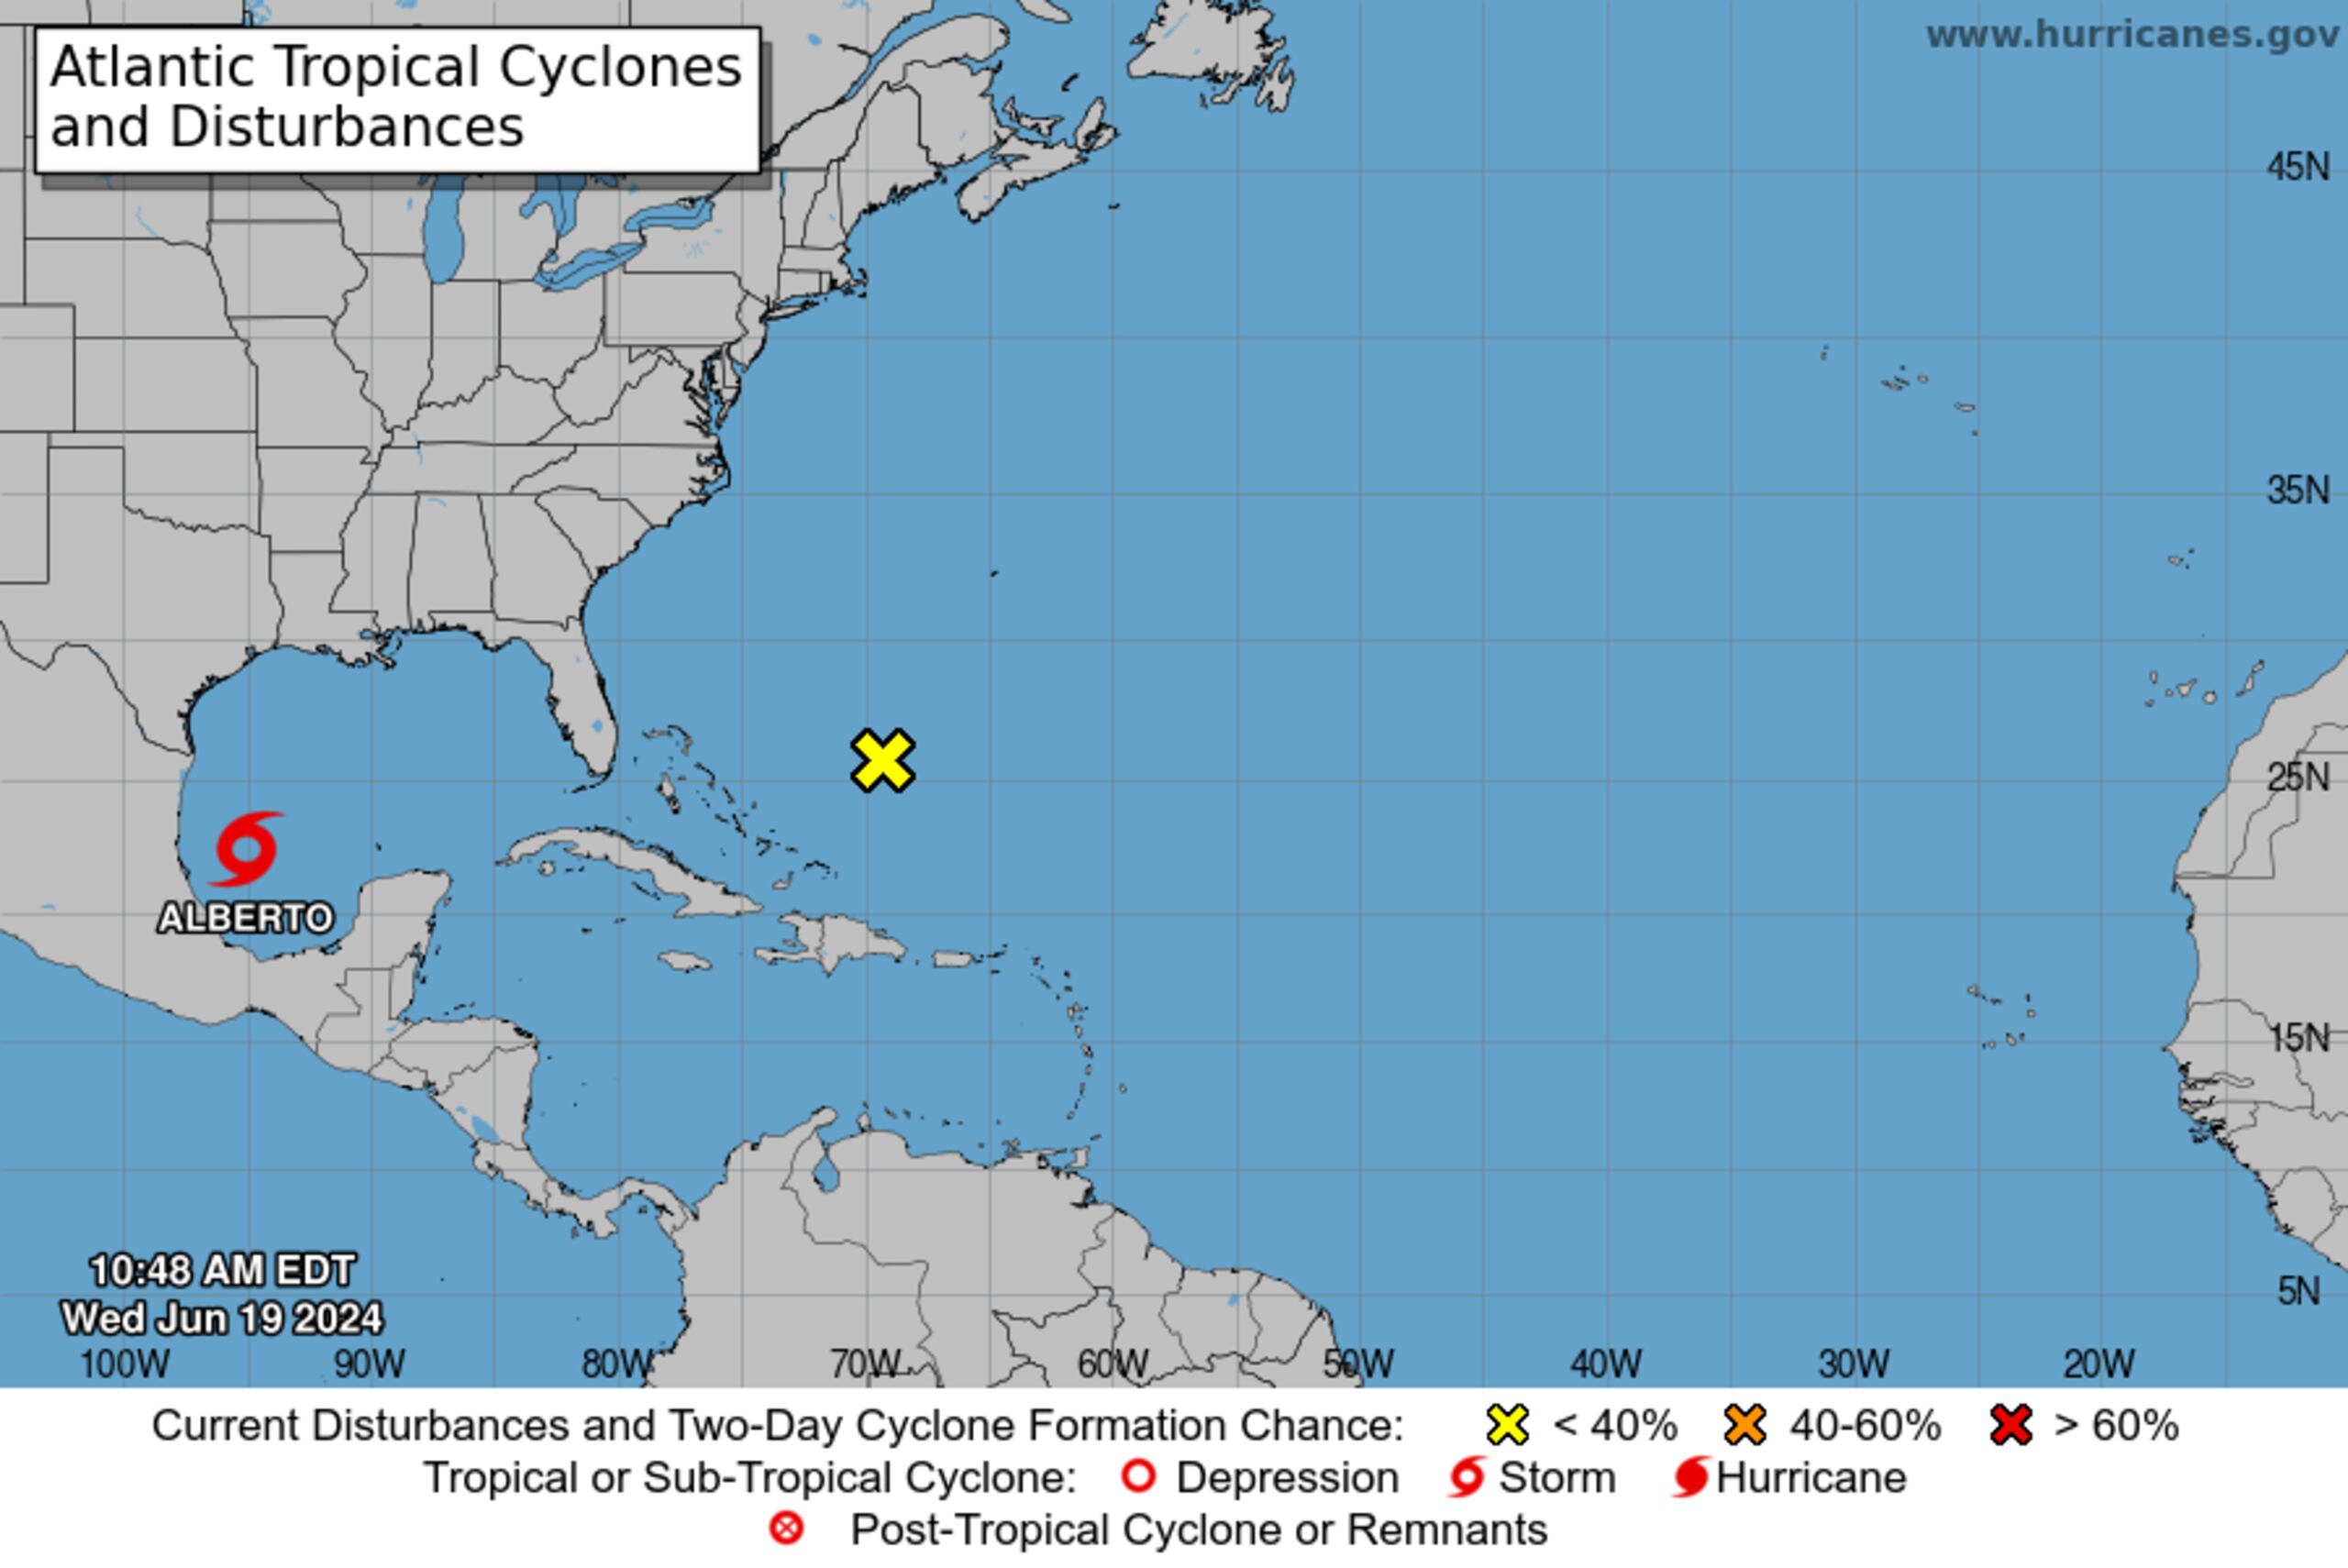 La tormenta tropical Alberto se formó en el Golfo de México el 19 de junio de 2024.